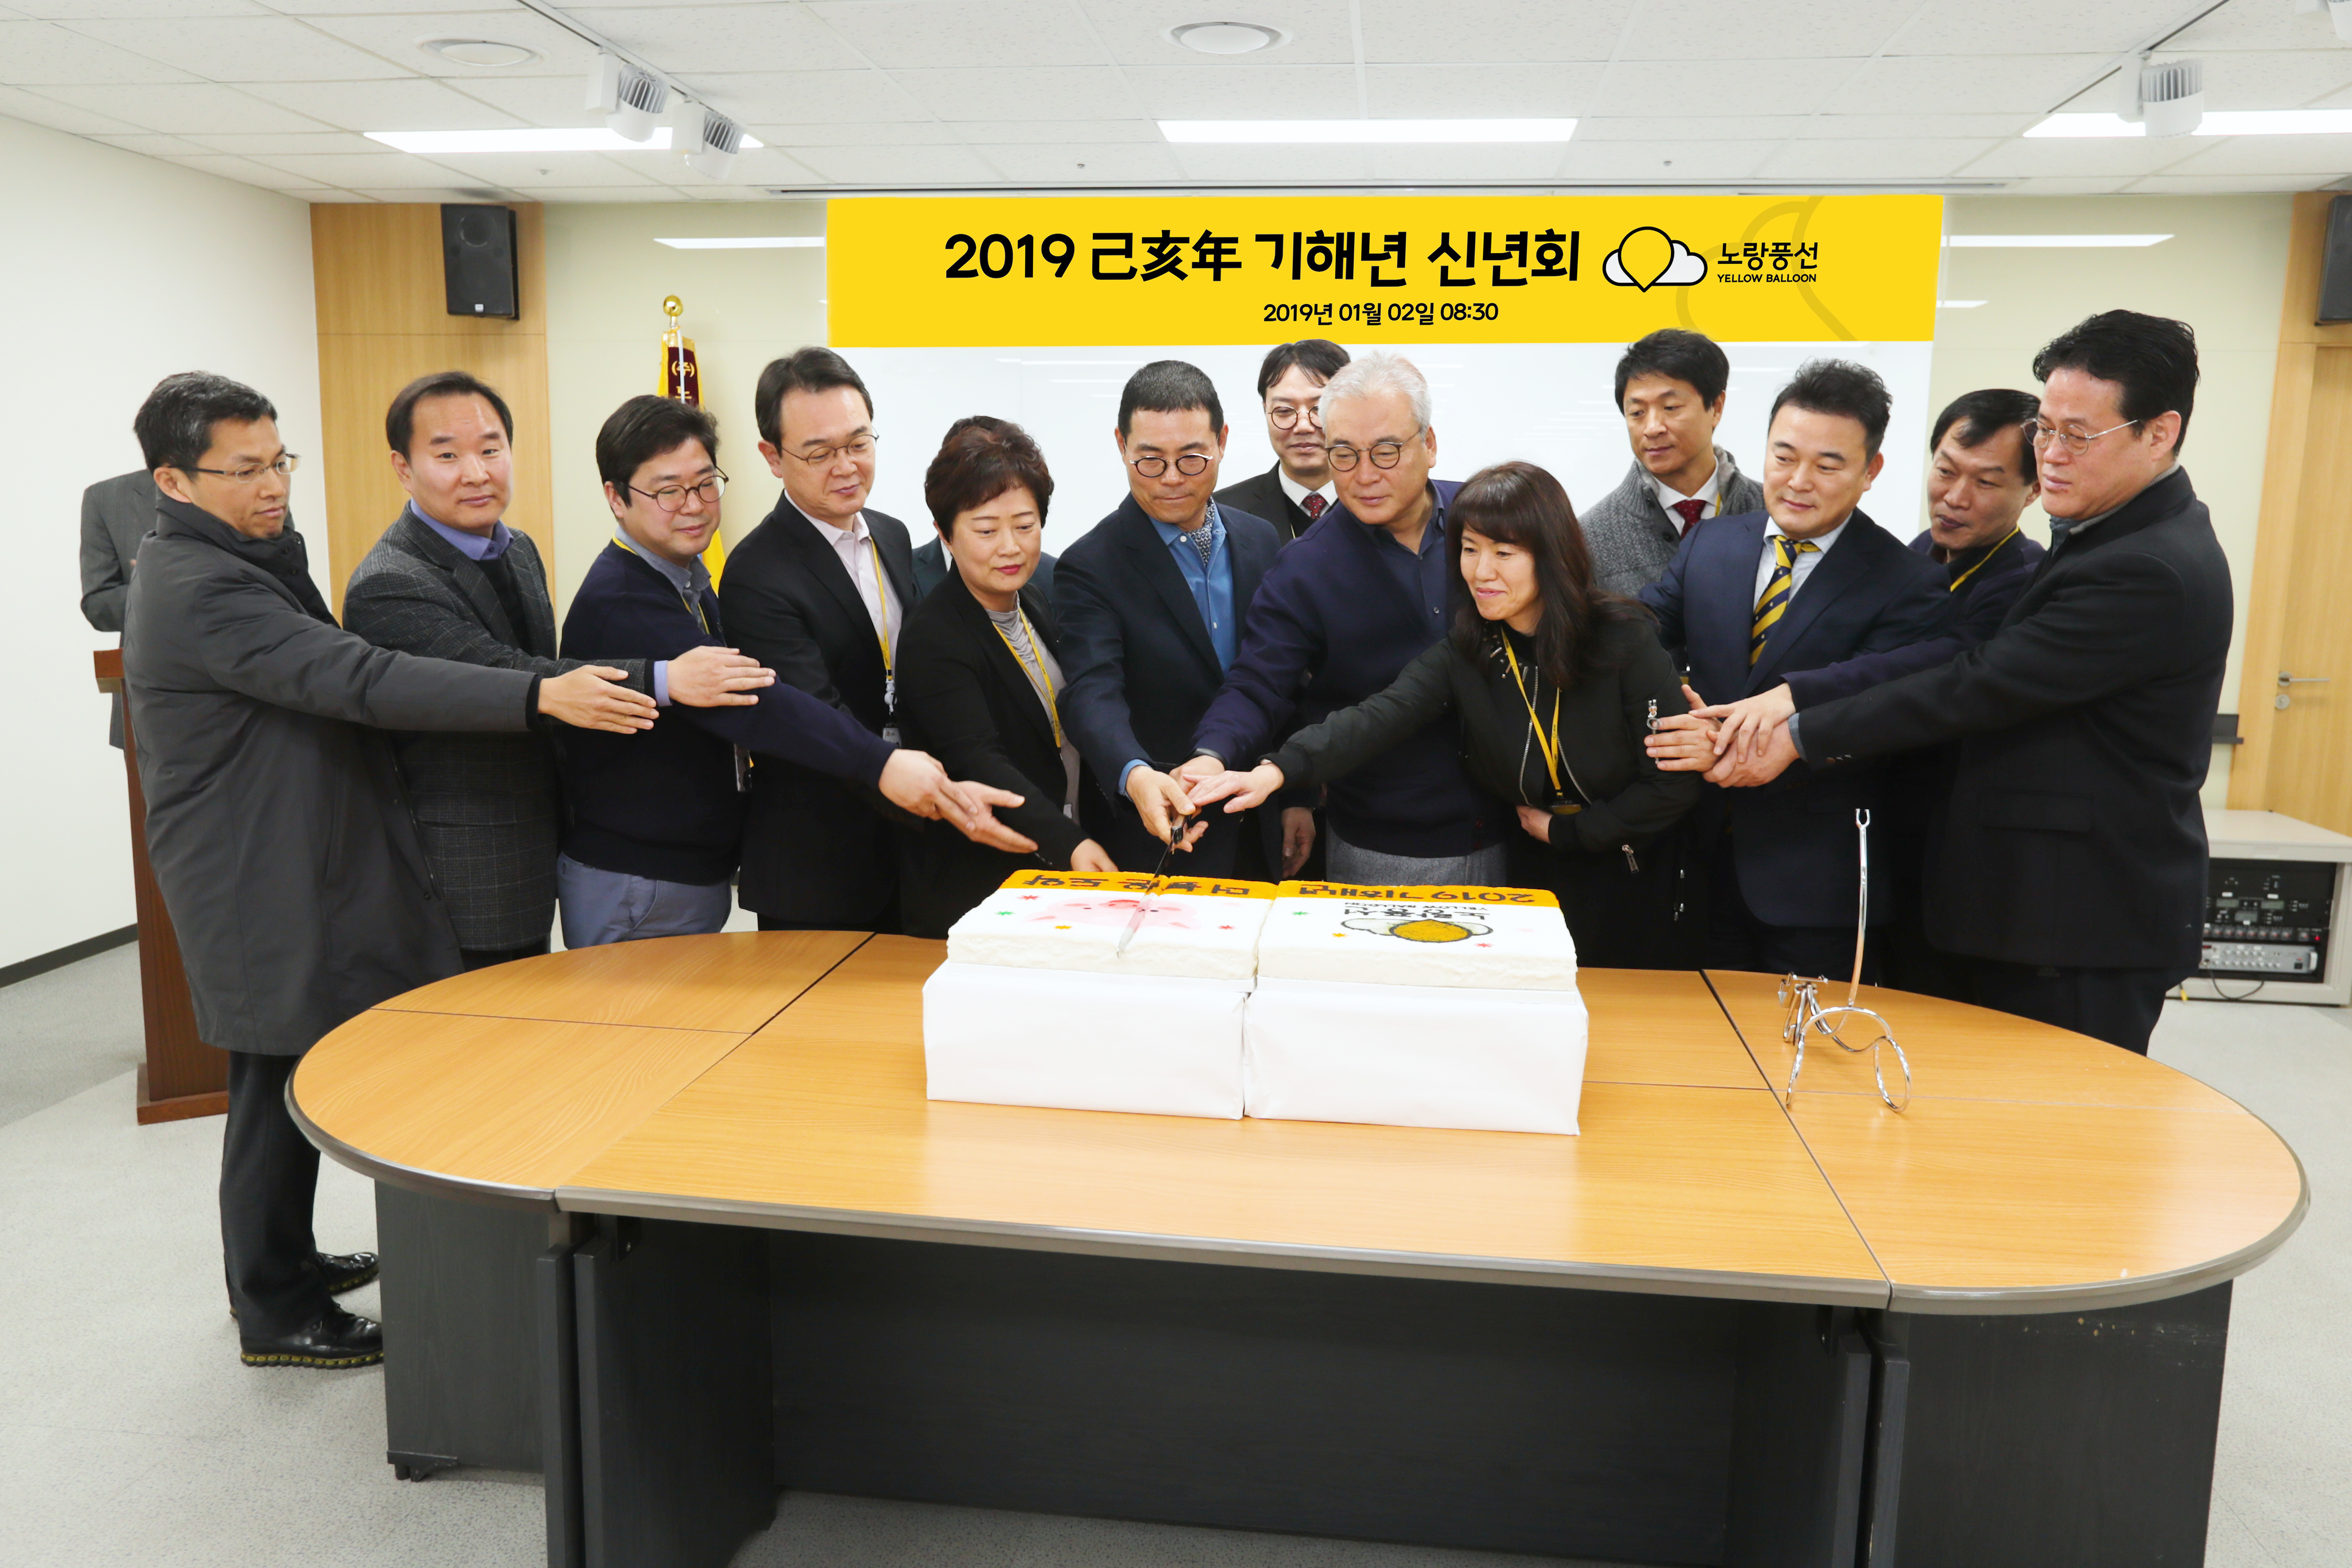 [이투데이] 노랑풍선, 2019년 신년회 개최…경영 혁신 다짐